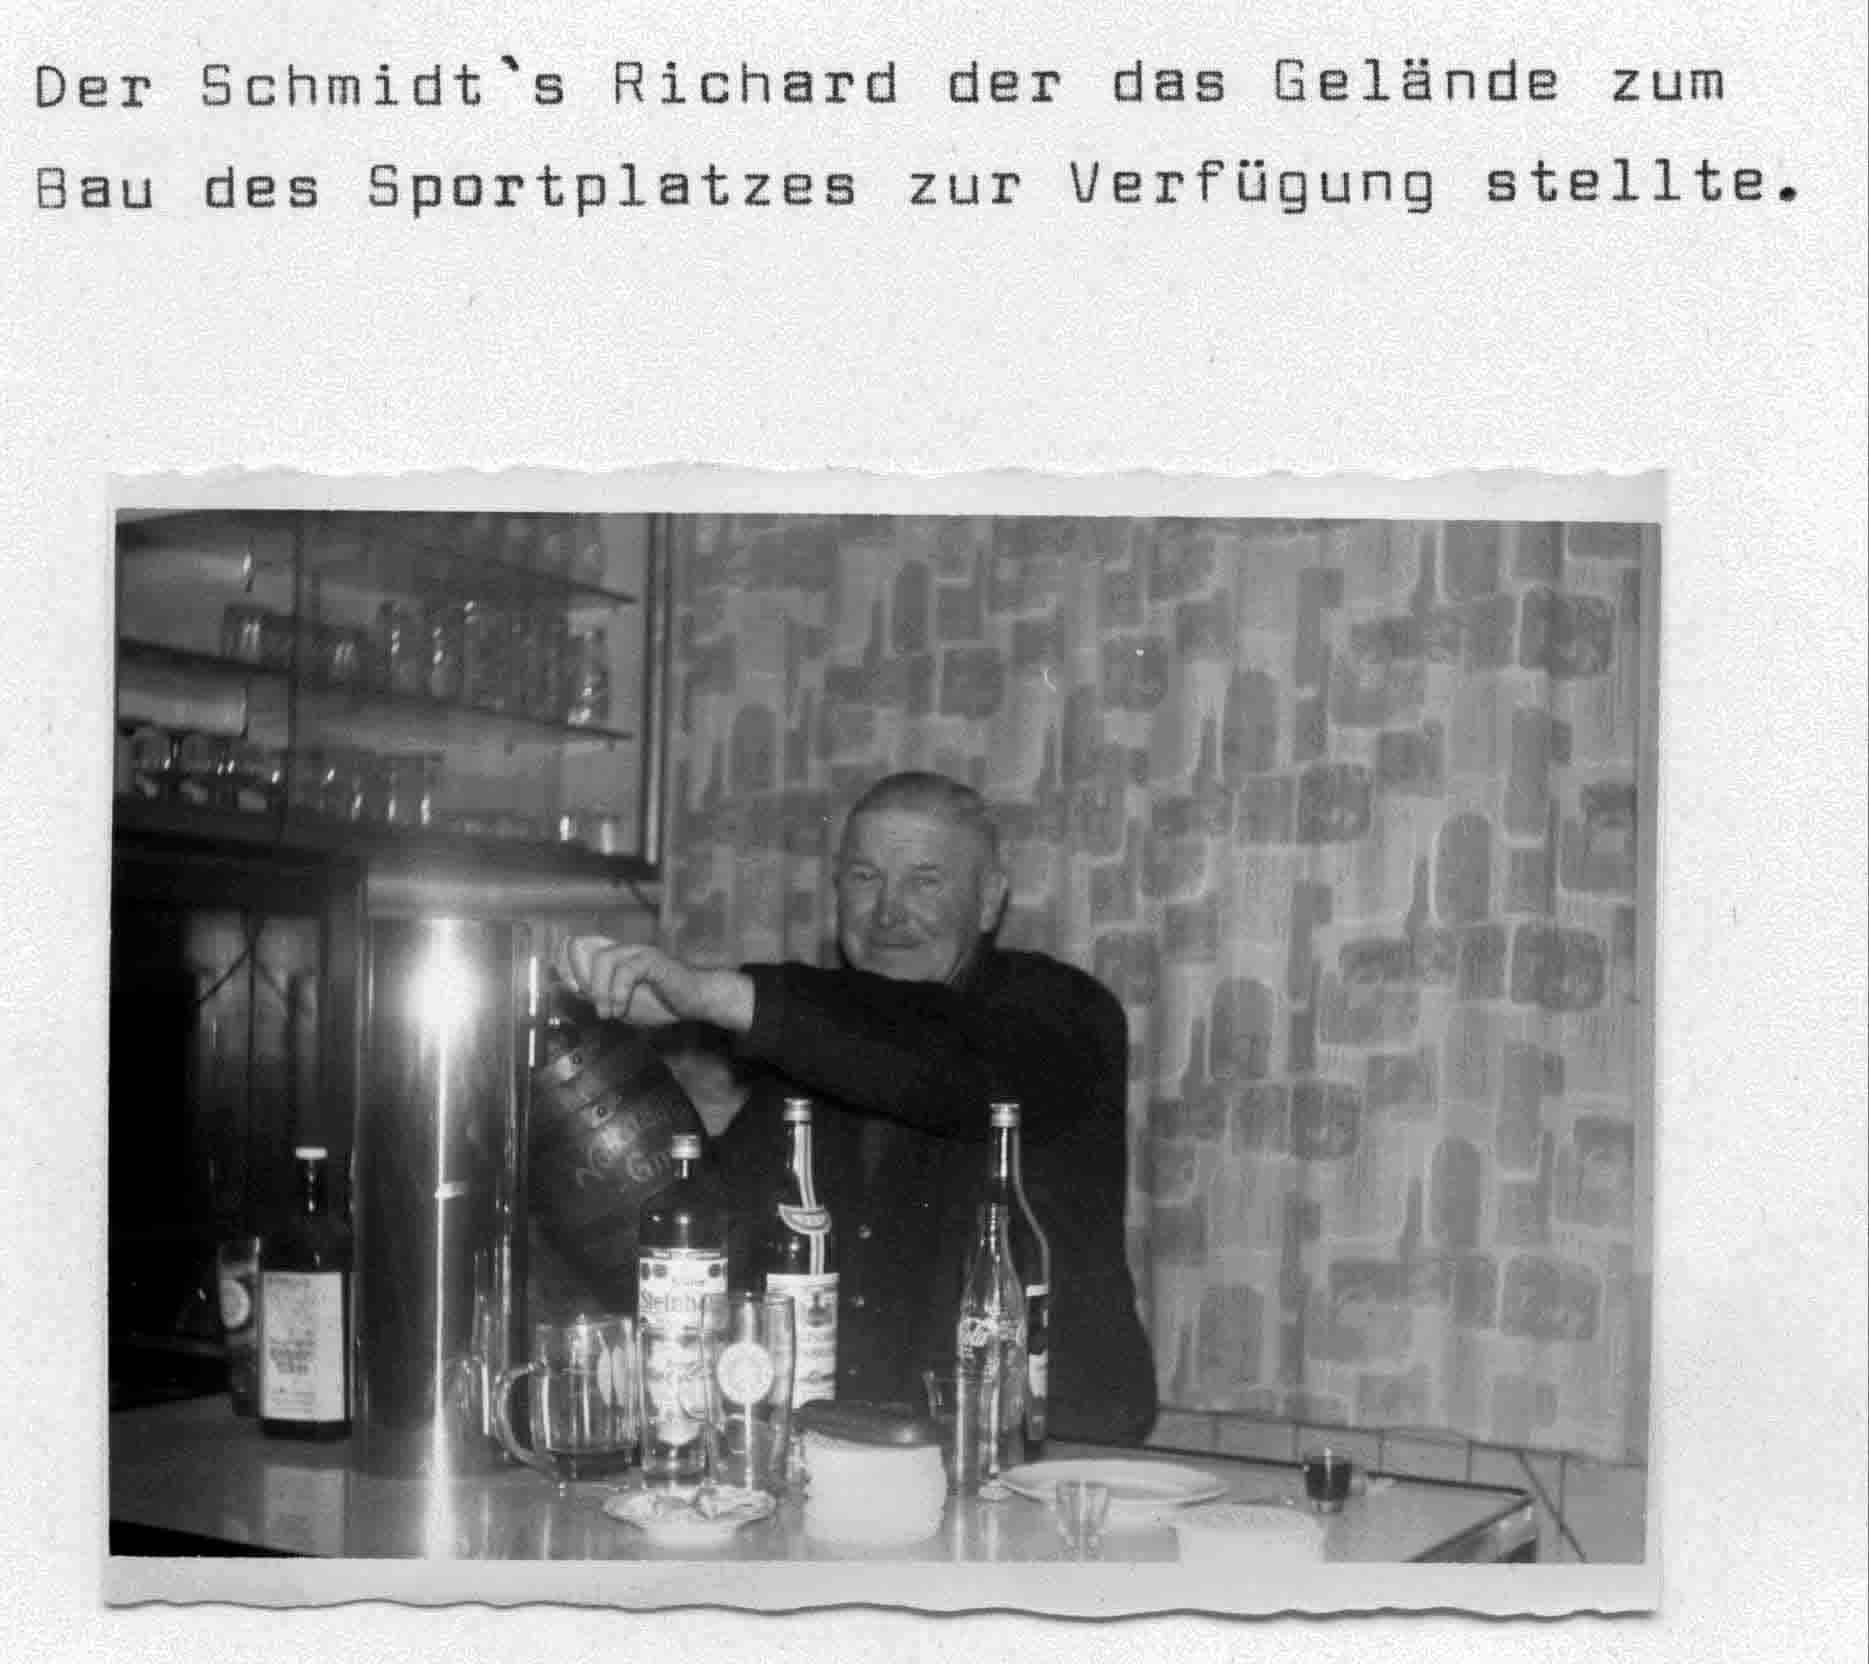 schmidts richard 1938